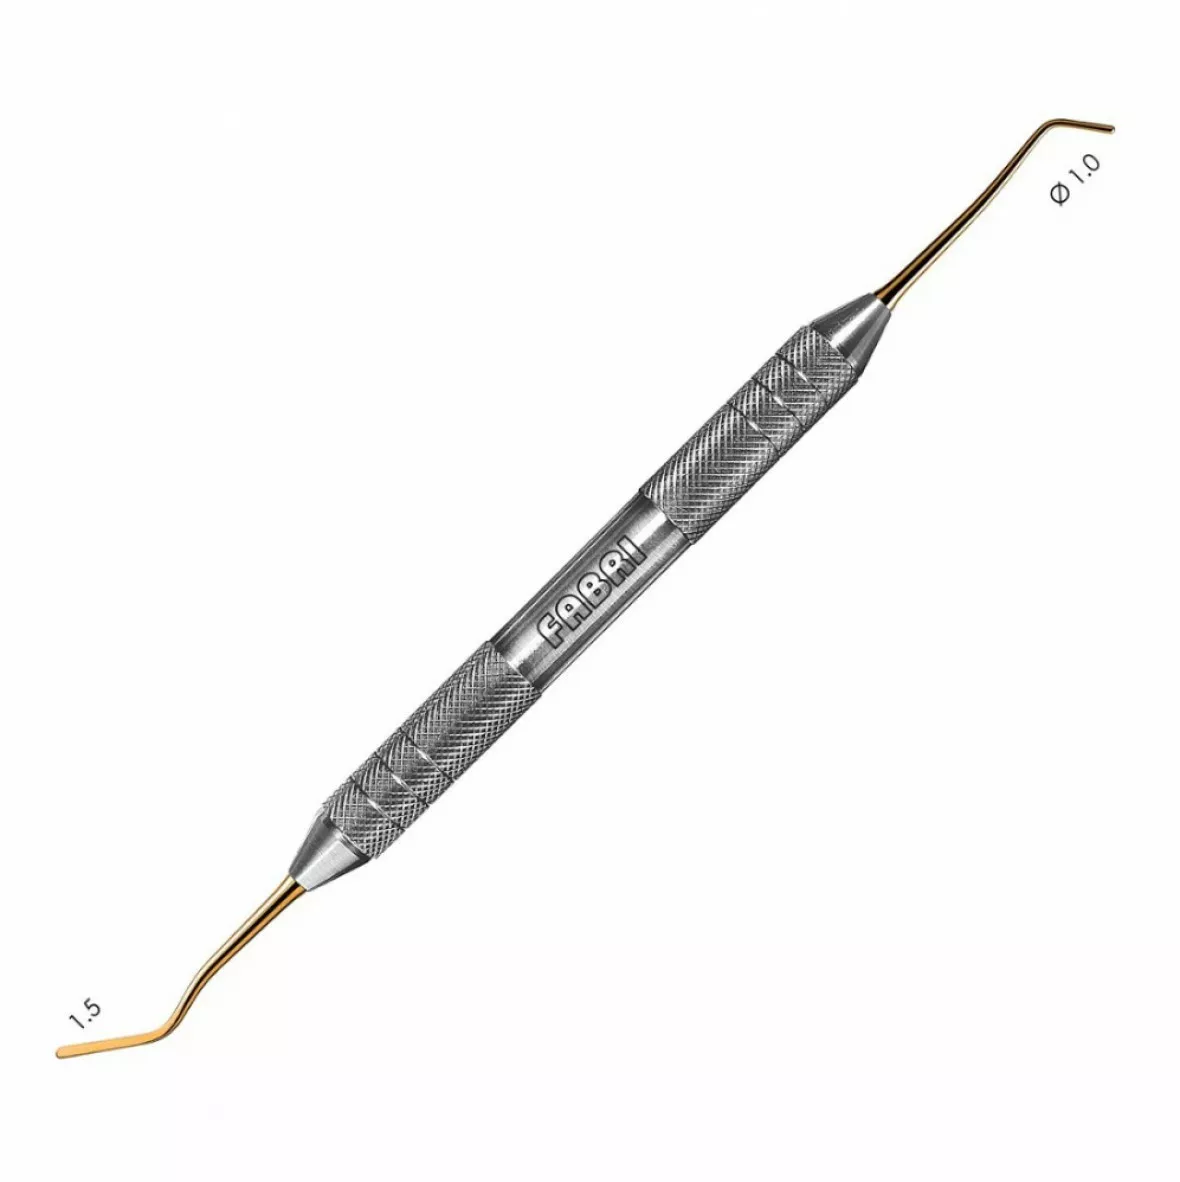 1334F TiN-Удлиненная узкая гладилка с цилиндрическим штопфером  1.0mm. Эргономичная ручка 1 0mm. Покрытие Gold